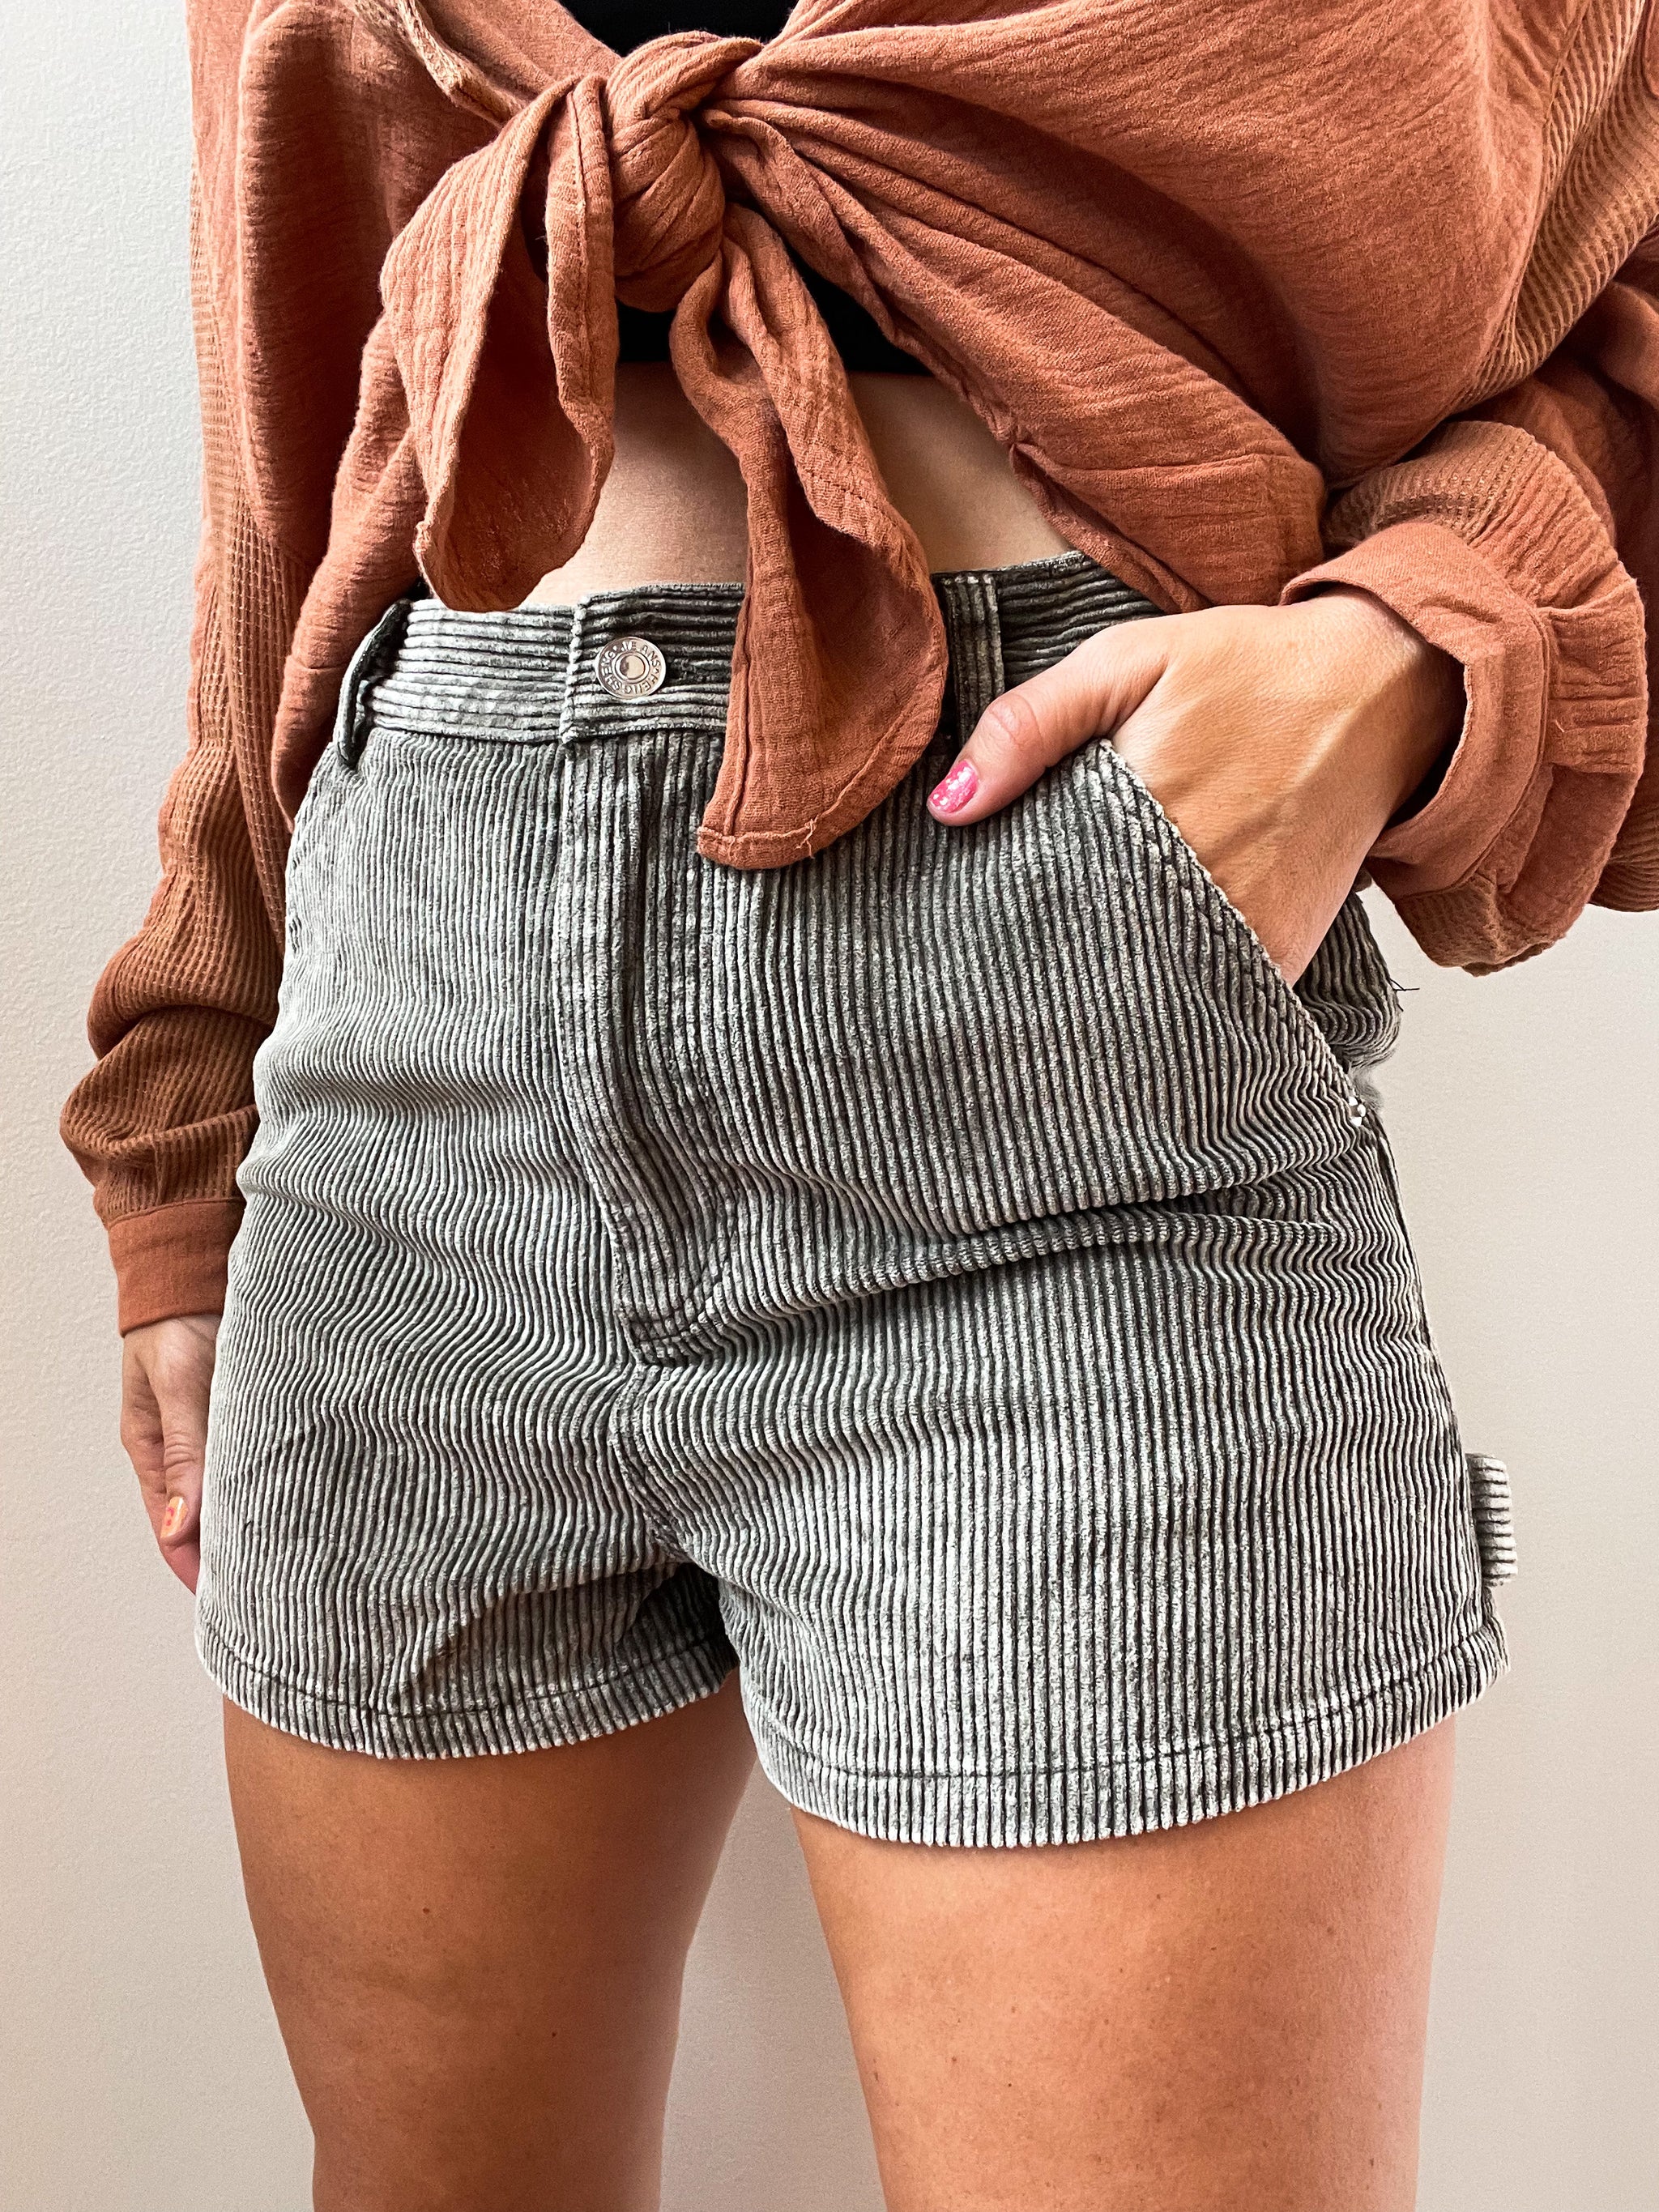 Light Washed Corduroy Shorts W/Side Pocket